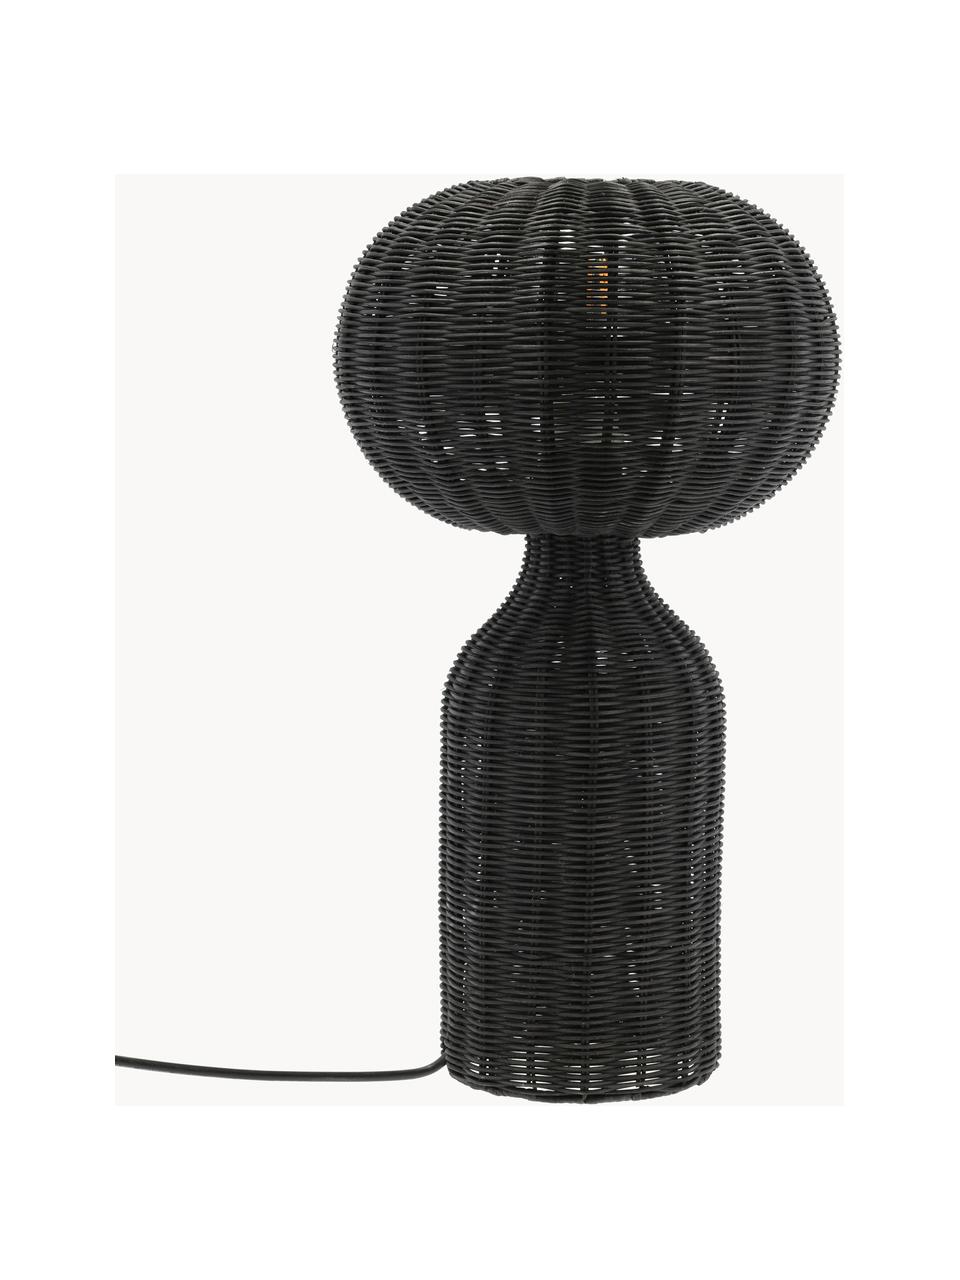 Große Tischlampe Werna aus Rattan, Schwarz, Ø 30 x H 54 cm